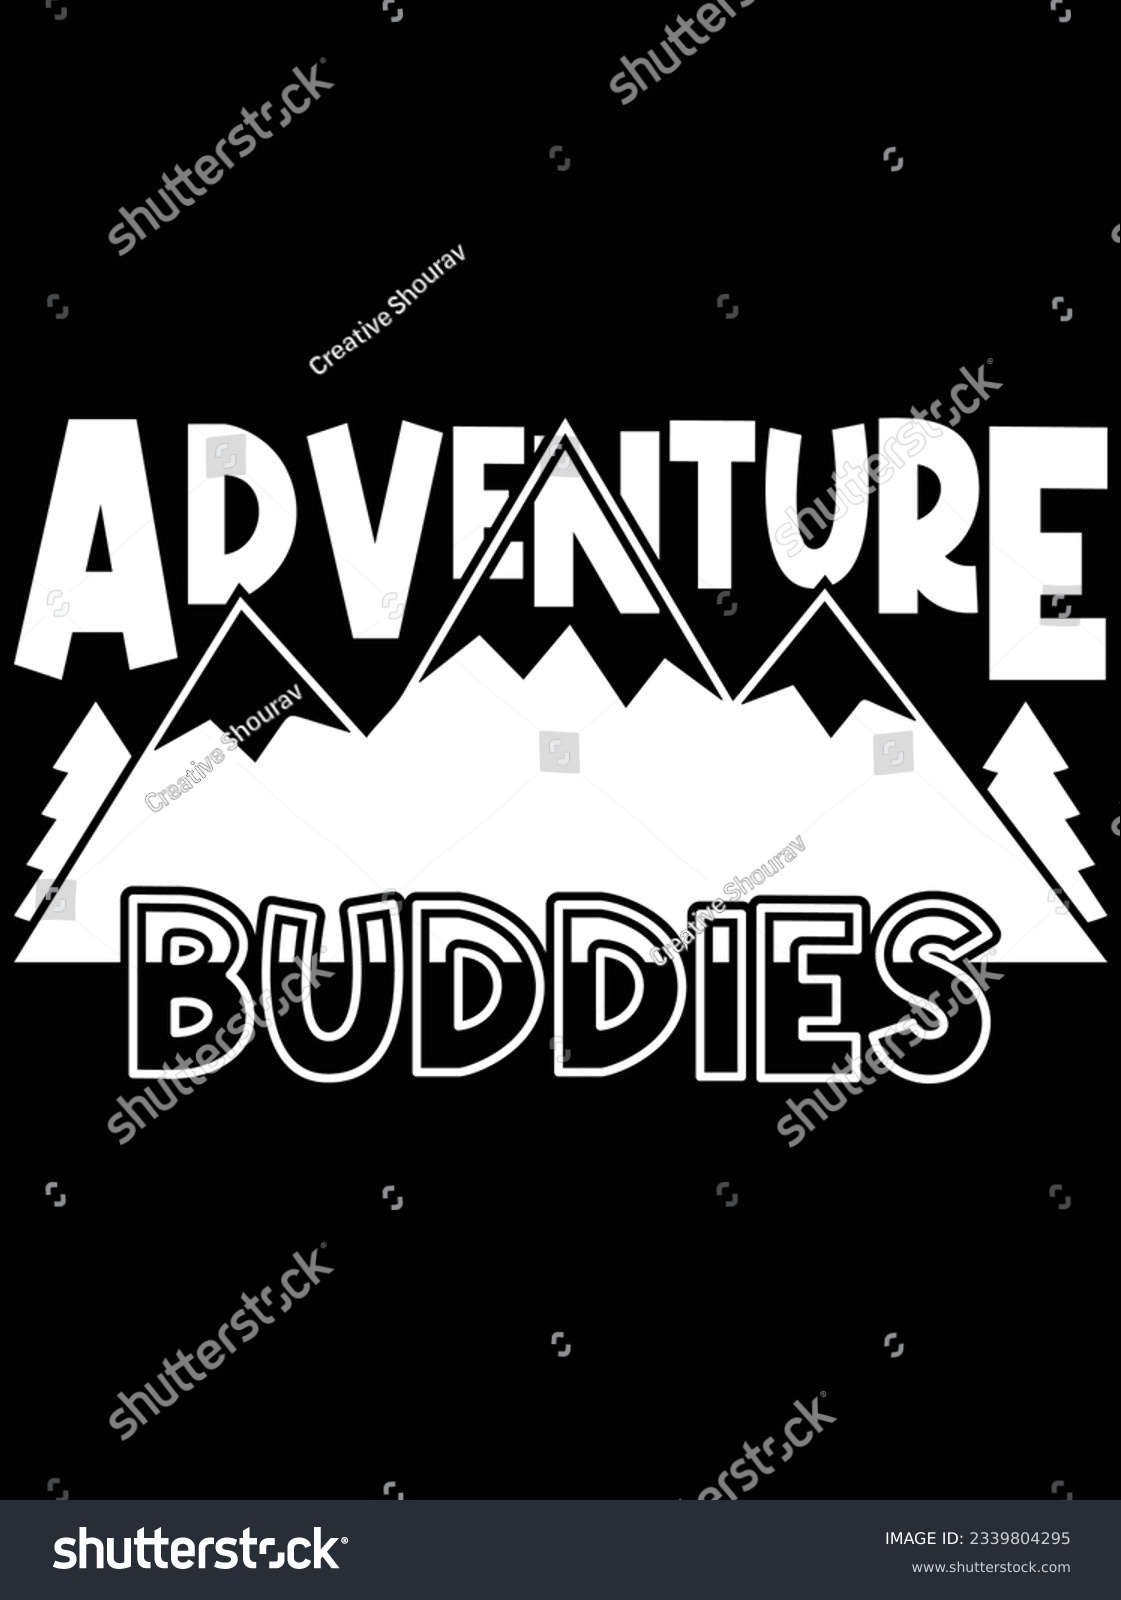 SVG of Adventure buddies vector art design, eps file. design file for t-shirt. SVG, EPS cuttable design file svg